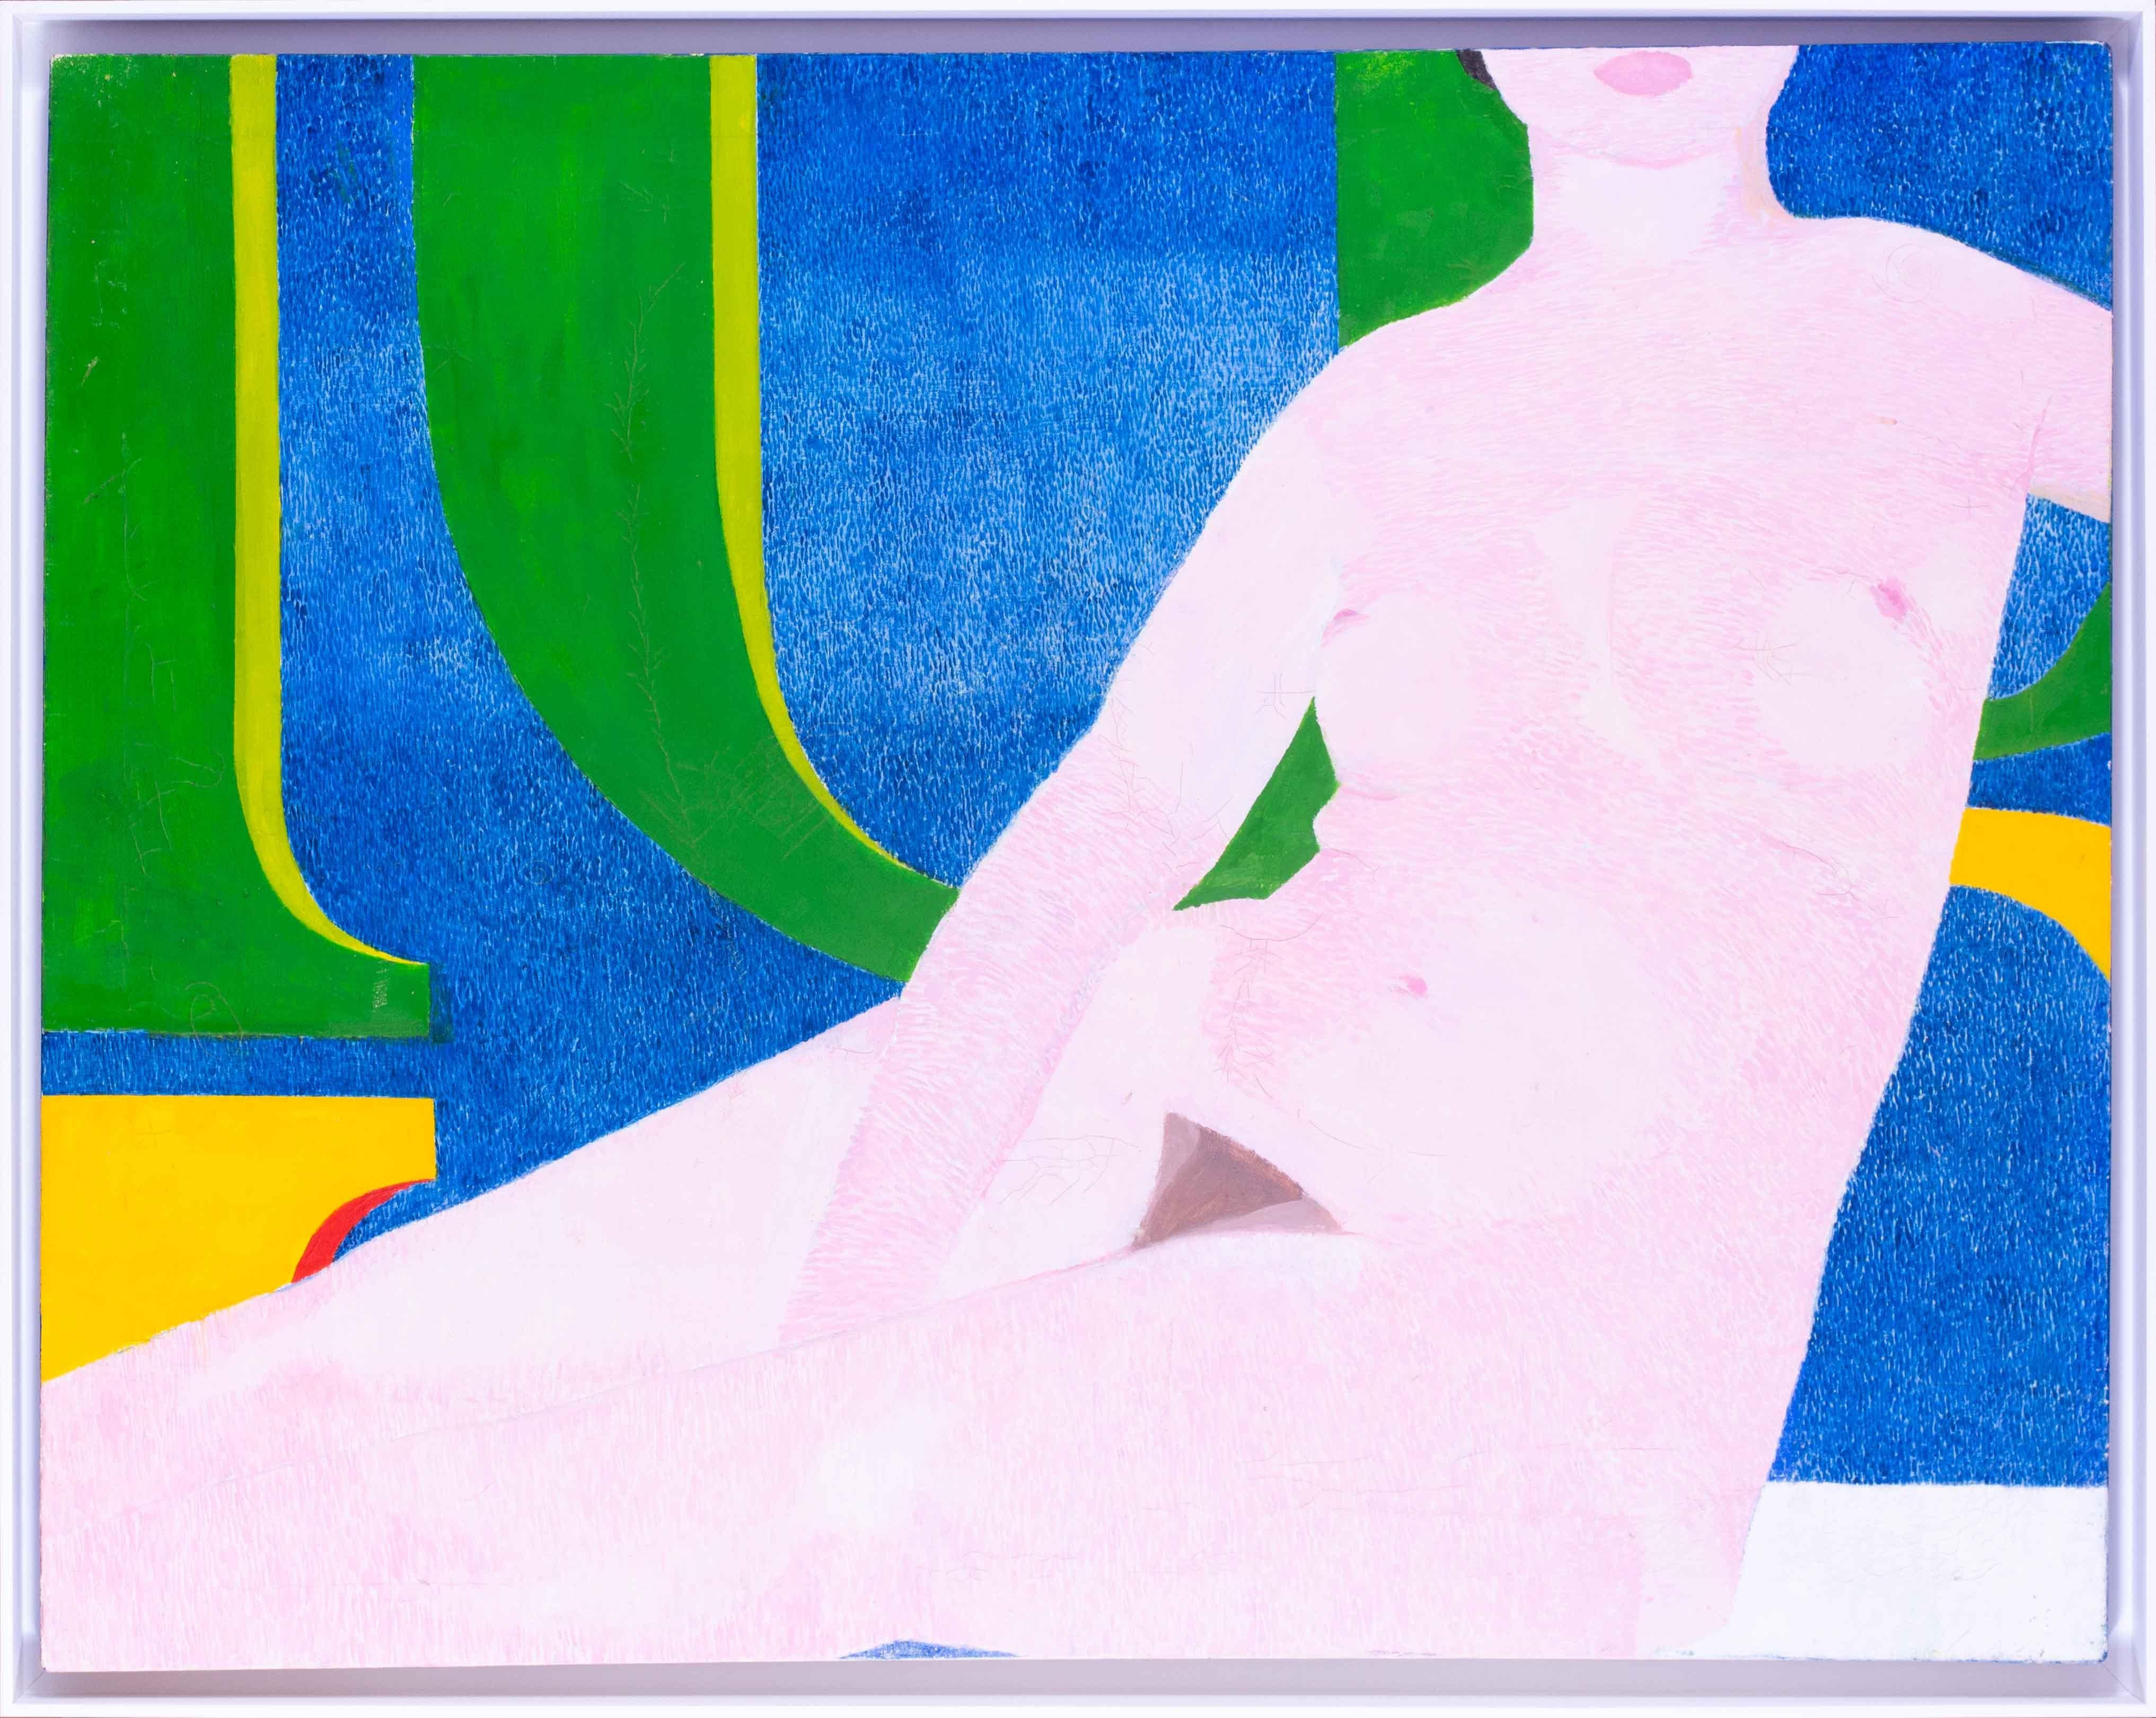 Ein auffallend originelles und großflächiges Retro-Gemälde eines Aktes vor einem gemalten grafischen Muster aus dem Jahr 1976 des britischen Künstlers Ewart Johns.  Der kräftige blaue und grüne Hintergrund unterstreicht gekonnt die schlichte